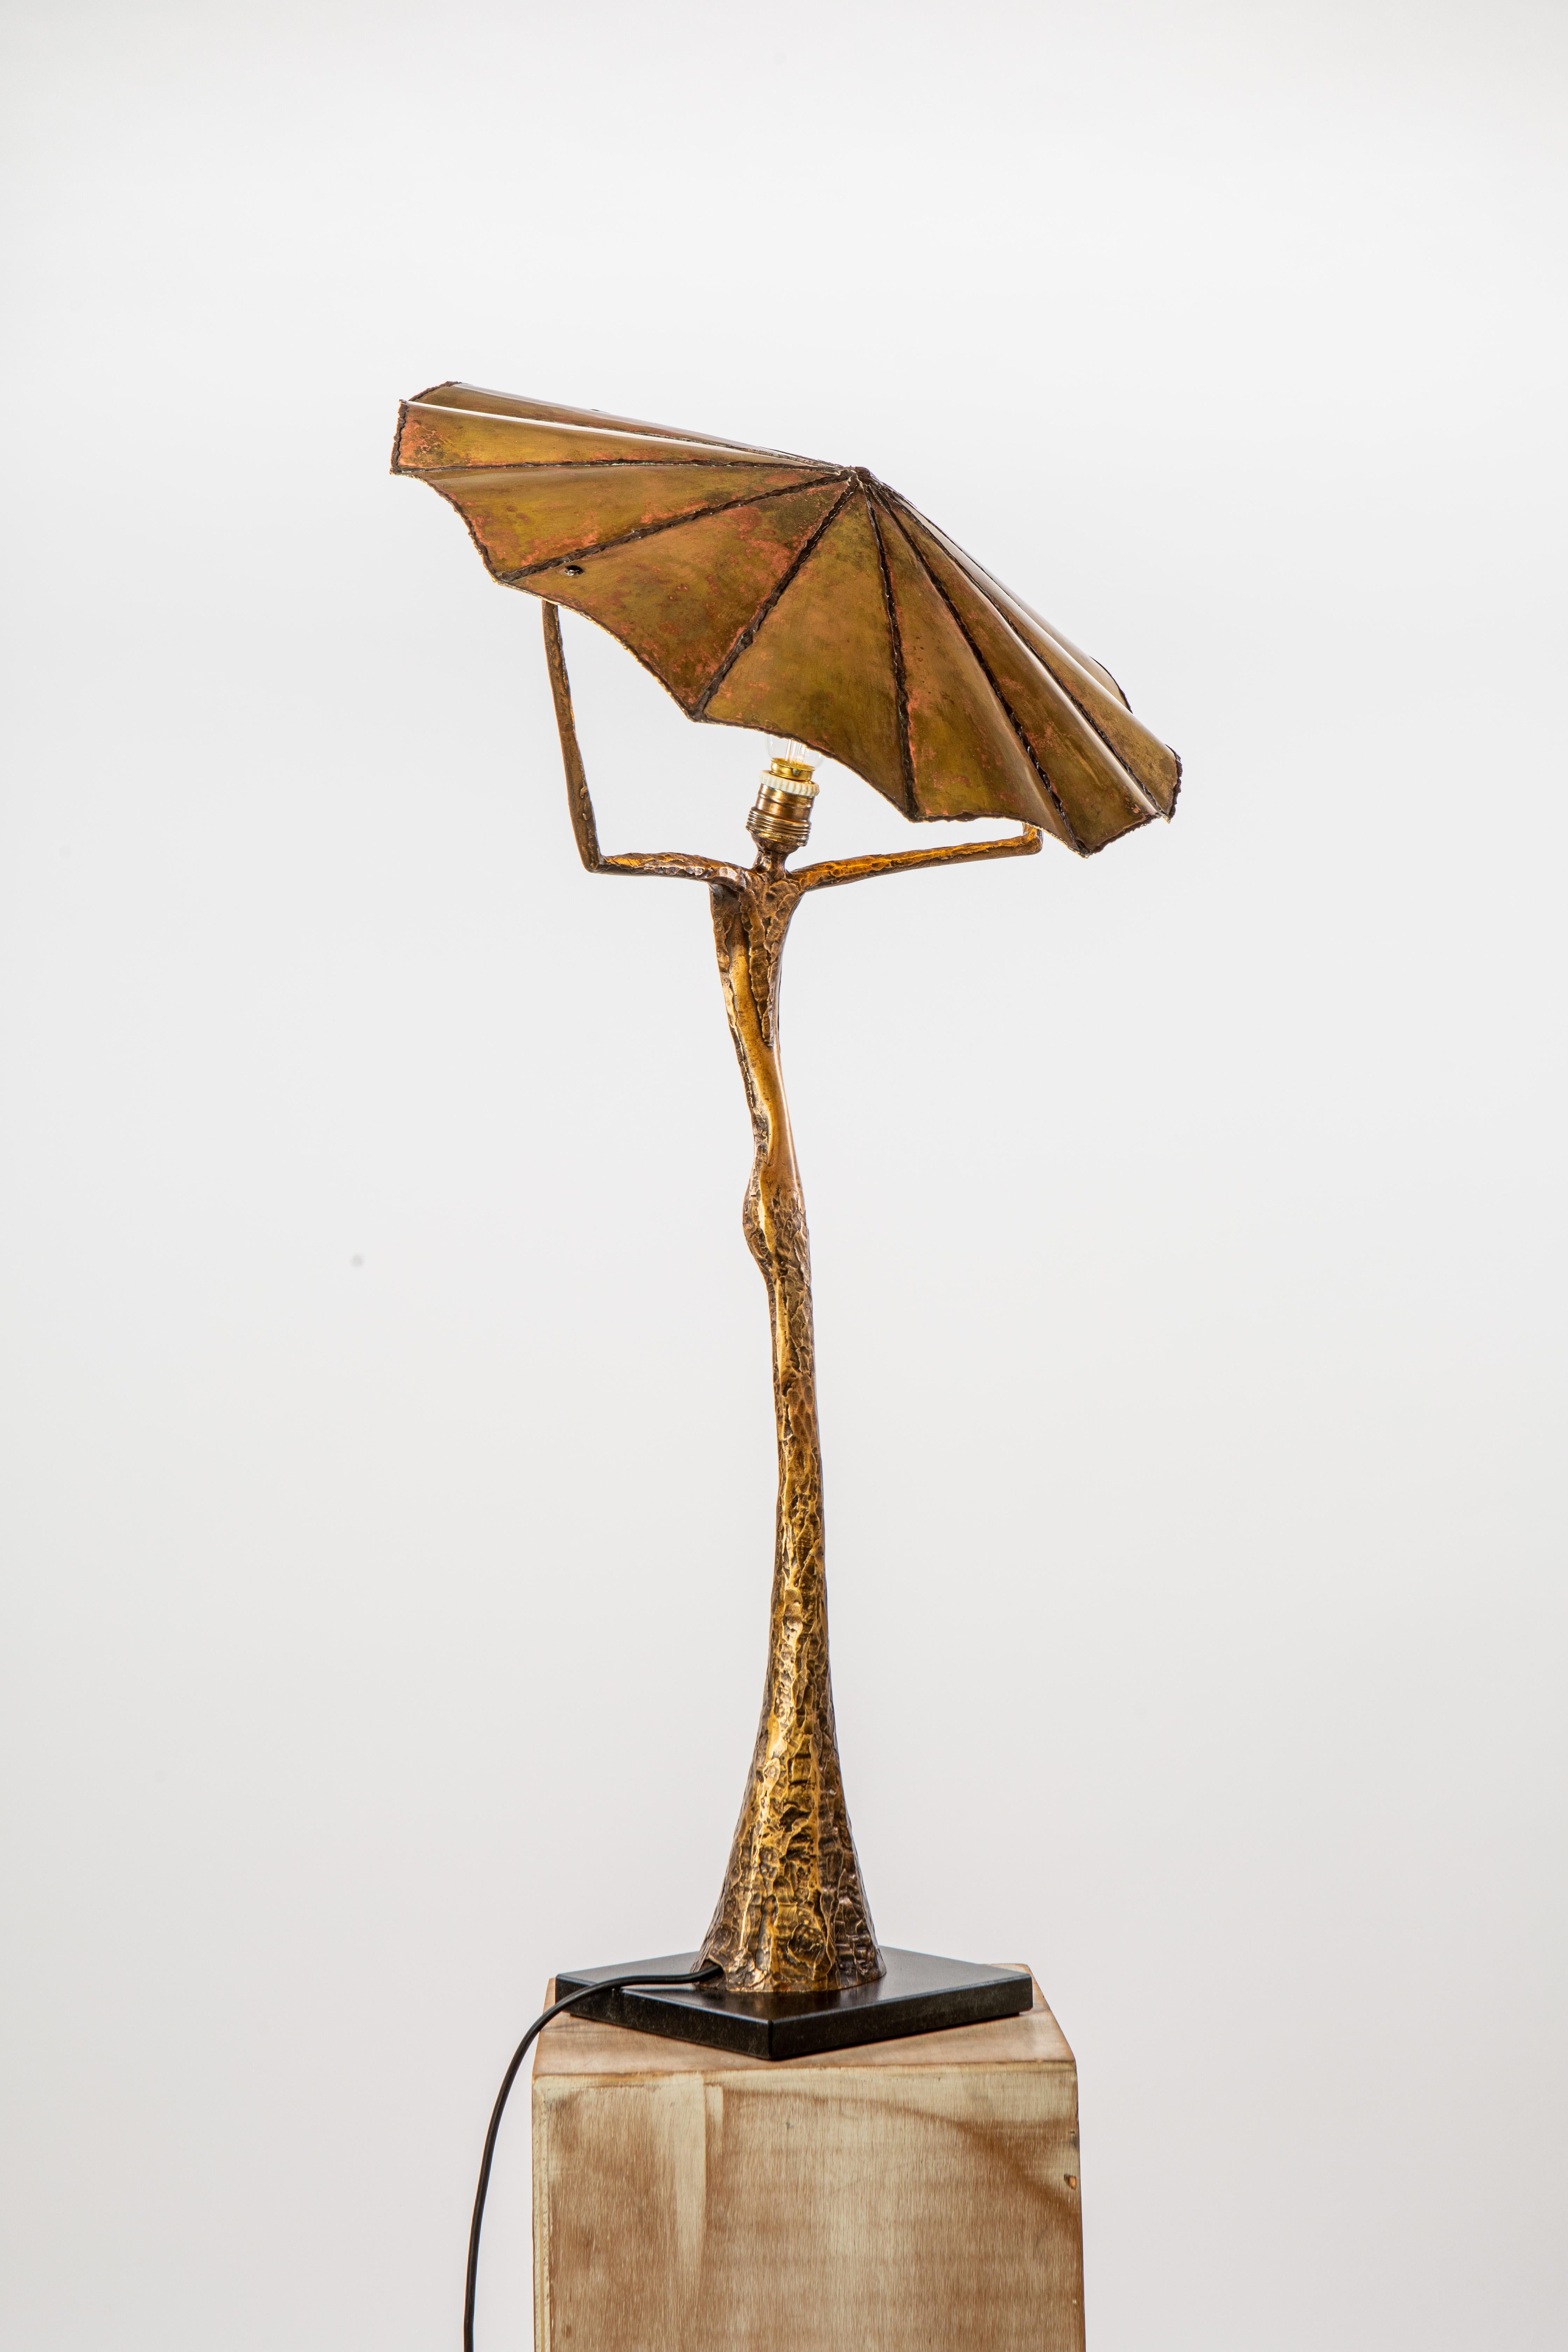 Lampe de table sculpturale du 21e siècle V.I.I. par Fantôme

Bronze patiné,
Personnage féminin stylisé,
Réflecteur en laiton doré,
h. 37.8'' x 18.5'',
Numéroté 4/8,
Signé, livré avec un certificat d'authenticité.

Cette lampe sculpturale rend